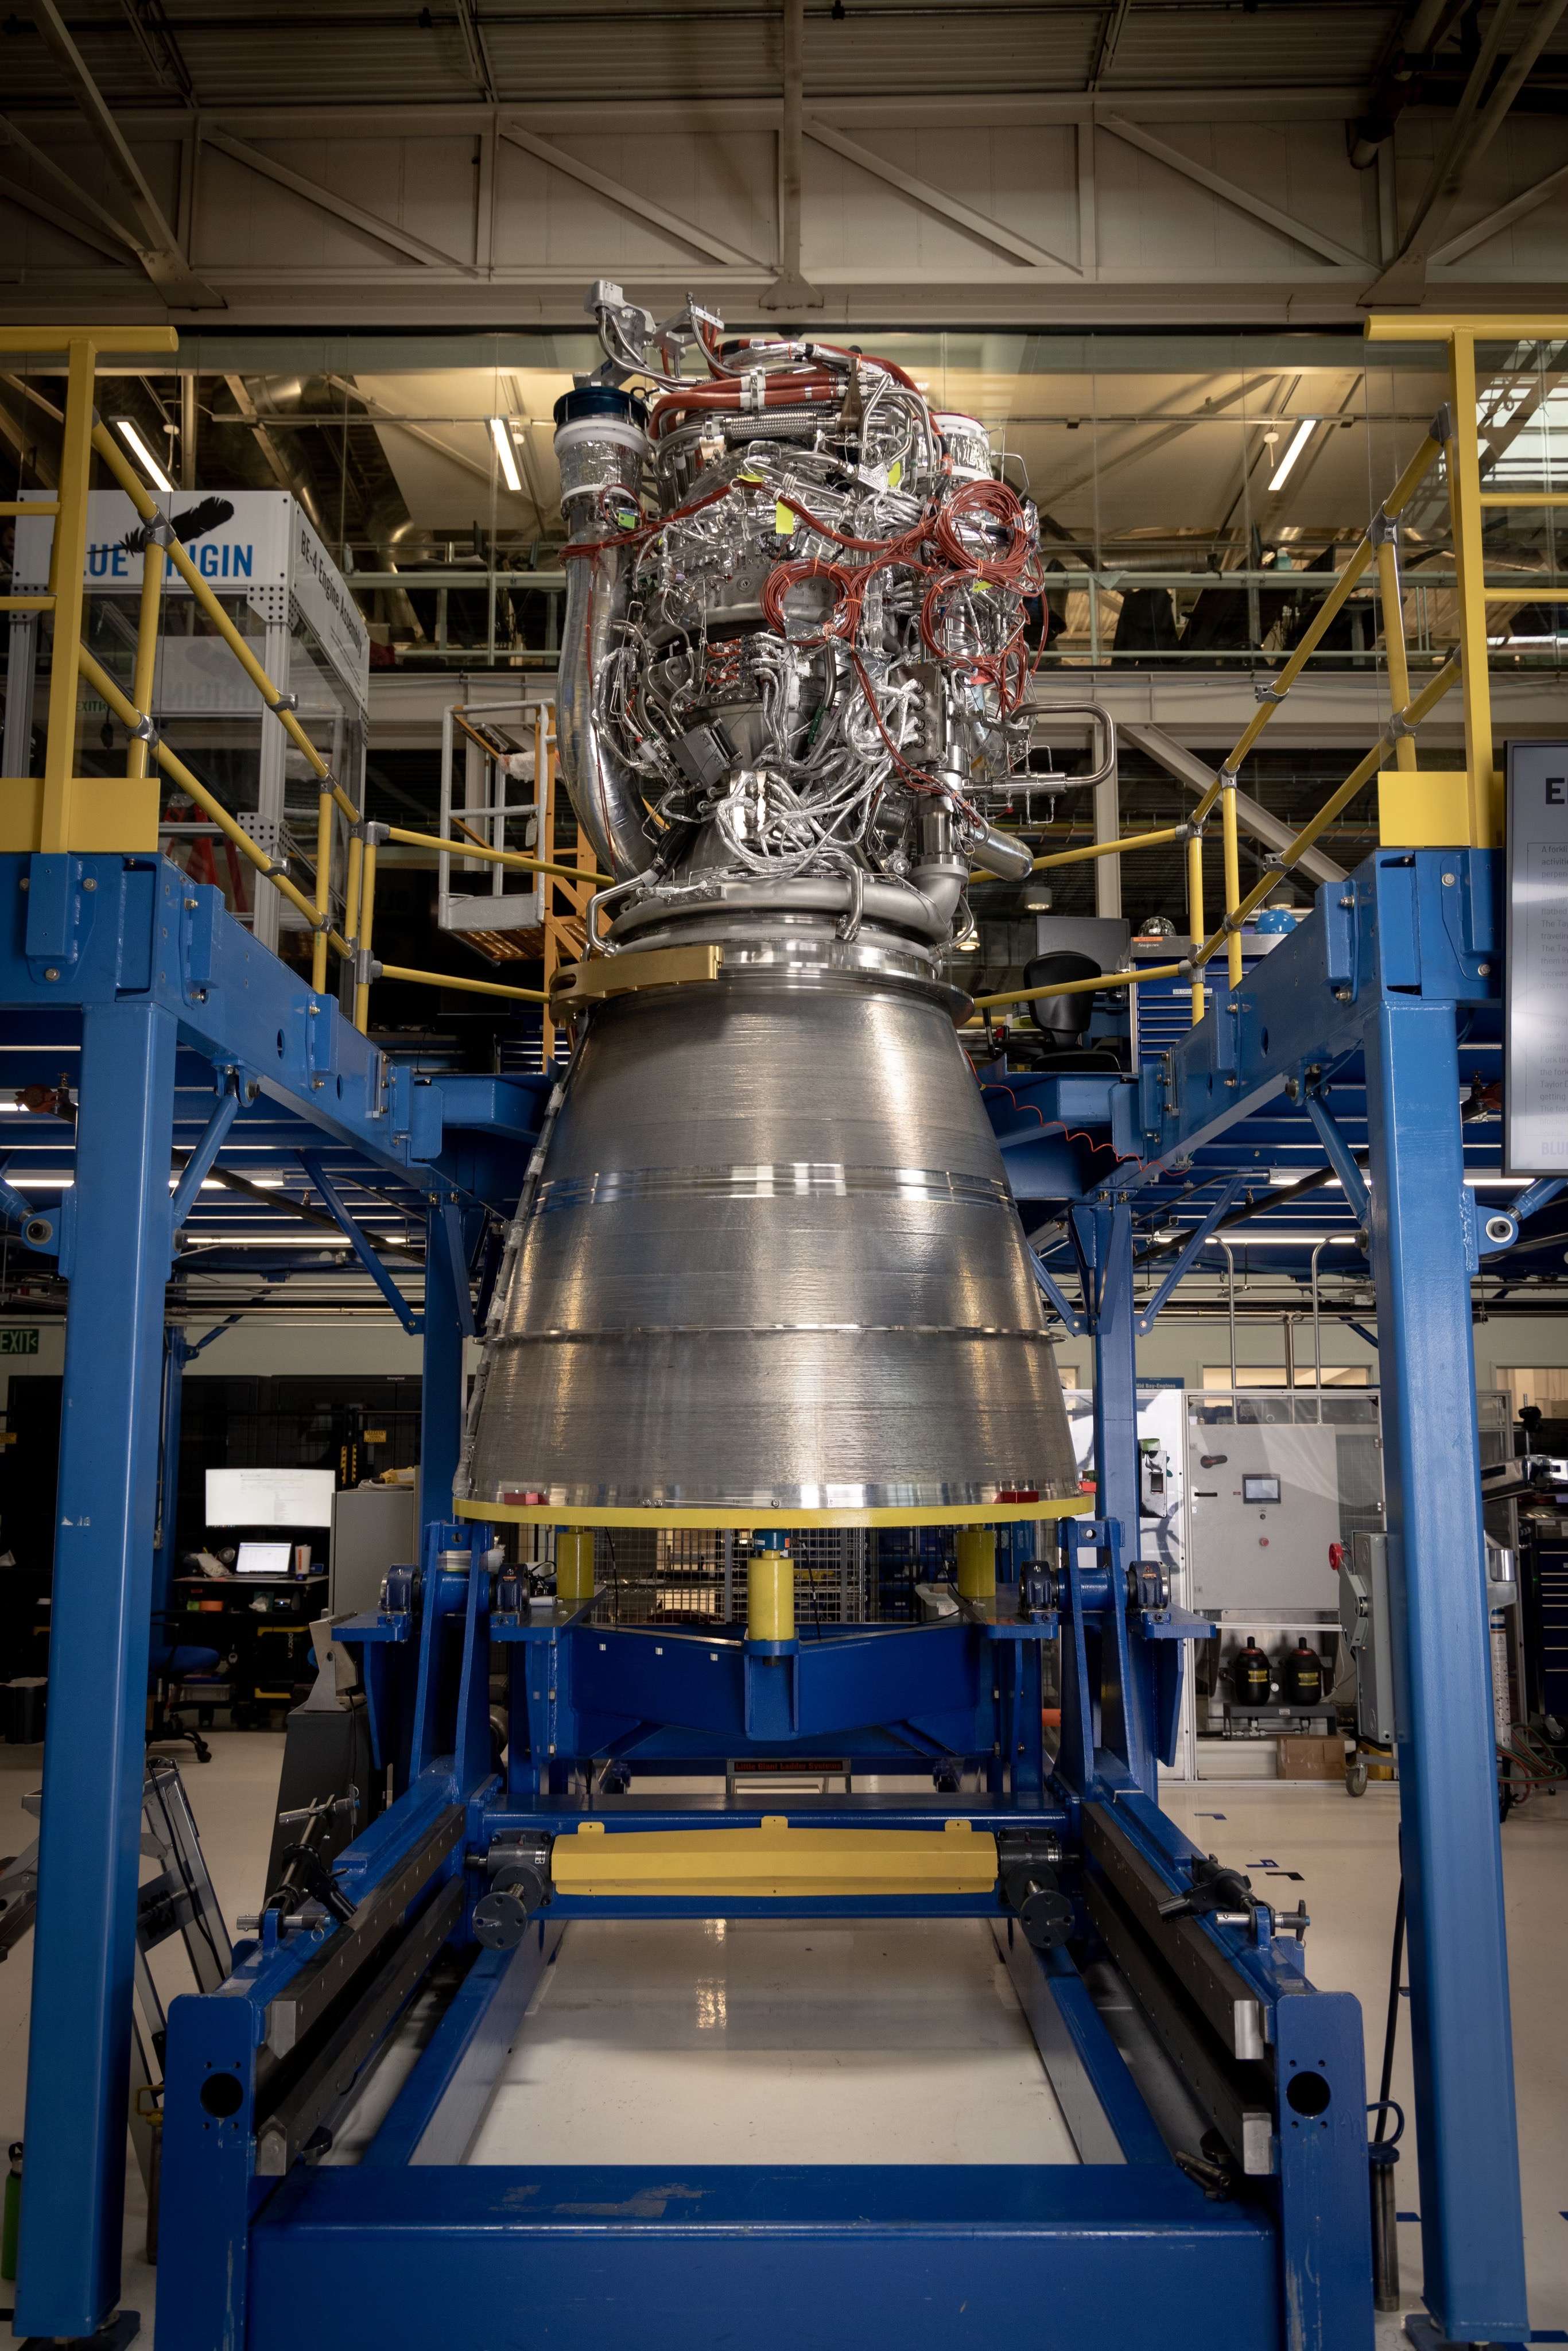 太空僧 的想法: 美国推力最大的甲烷火箭发动机,蓝色起源… 